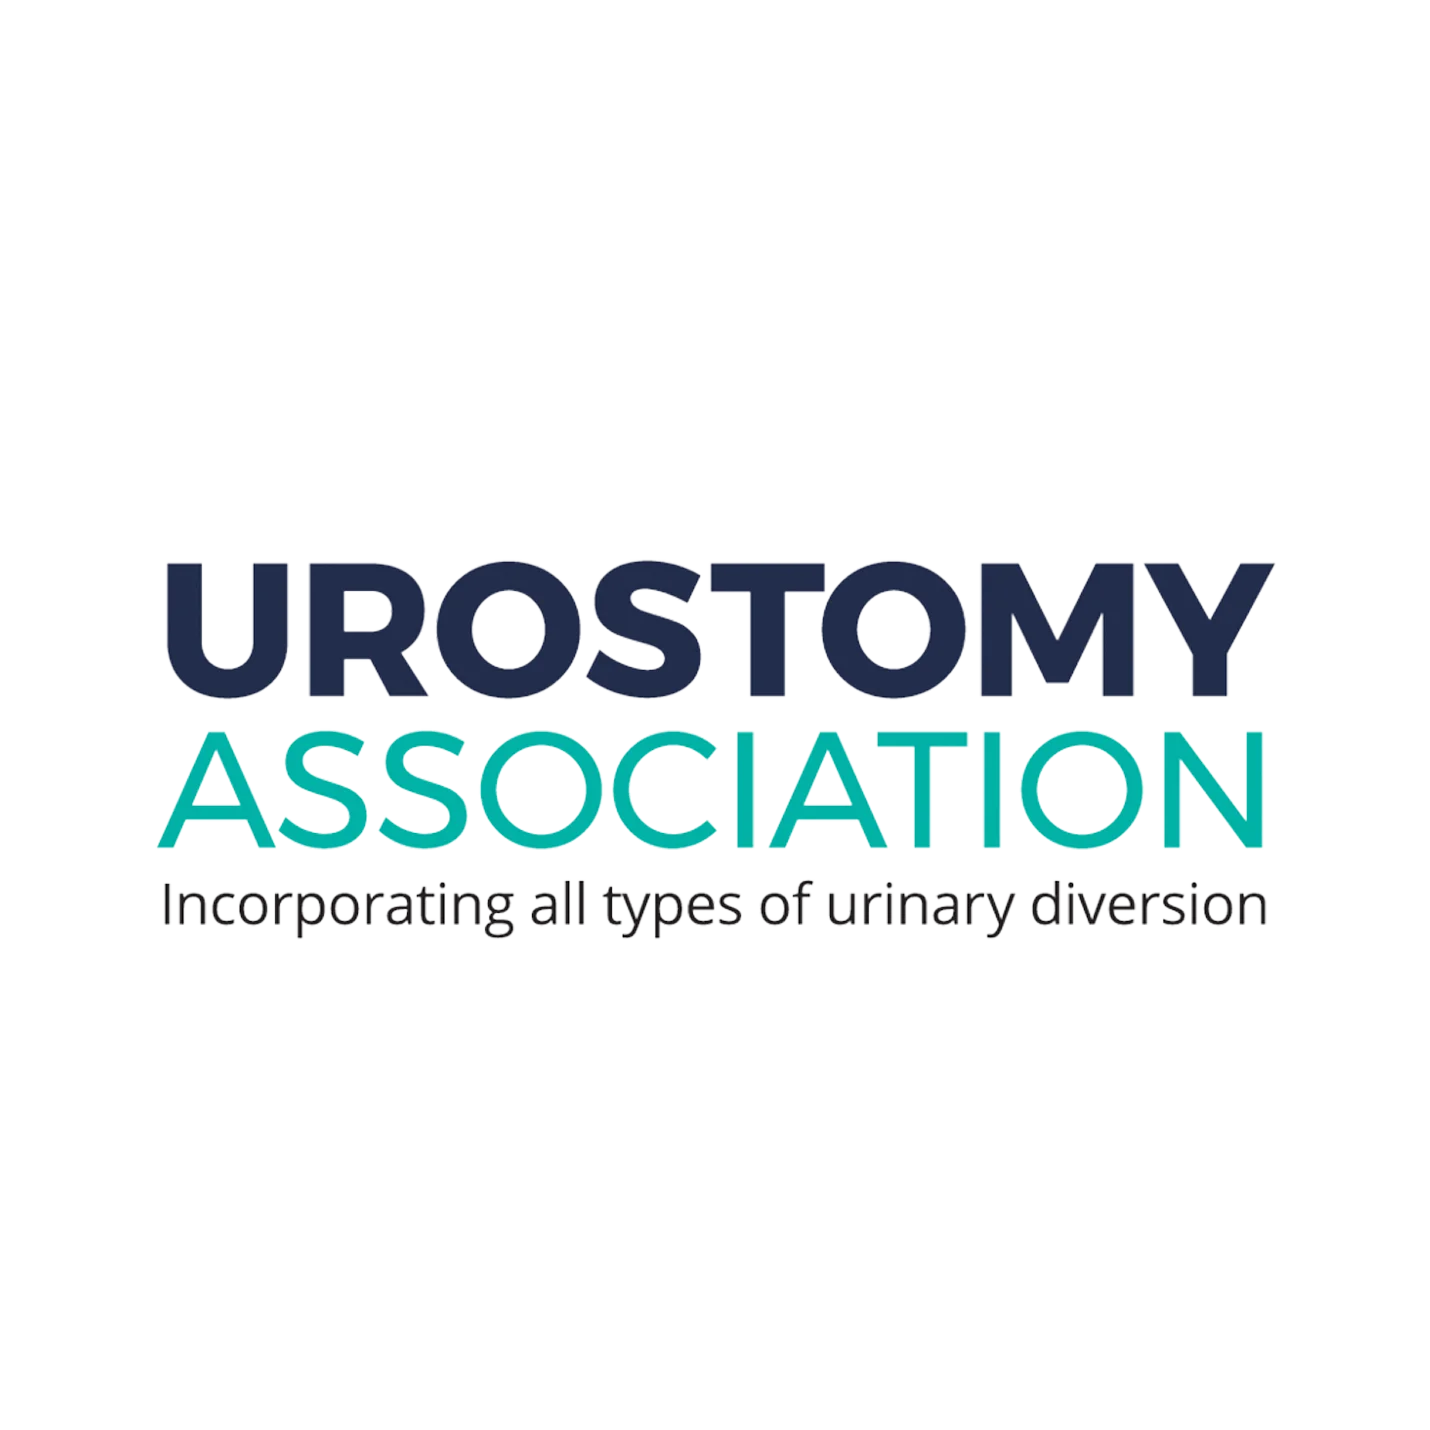 Urostomy Association Charity  logo 